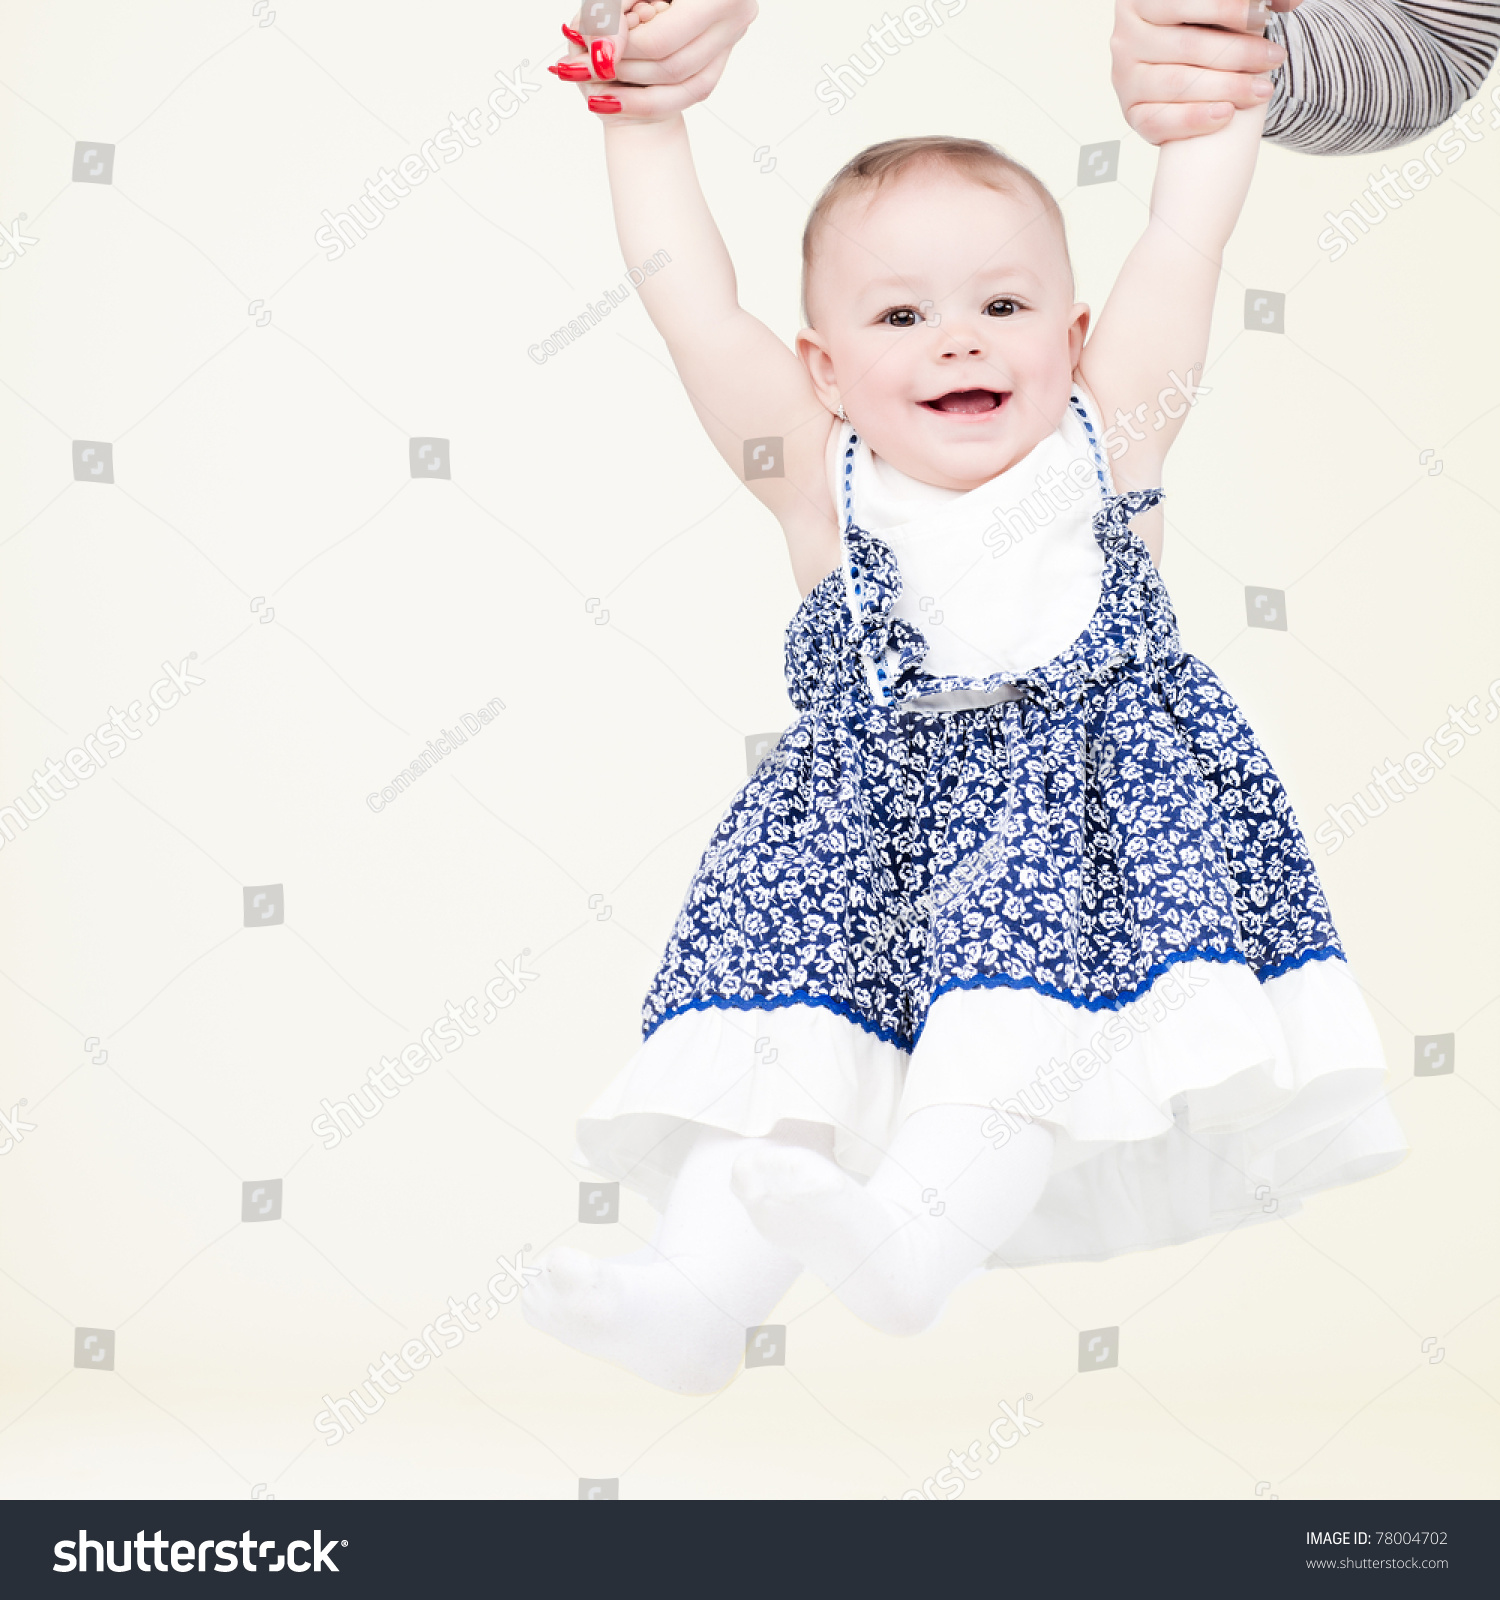 Laughing baby swinging